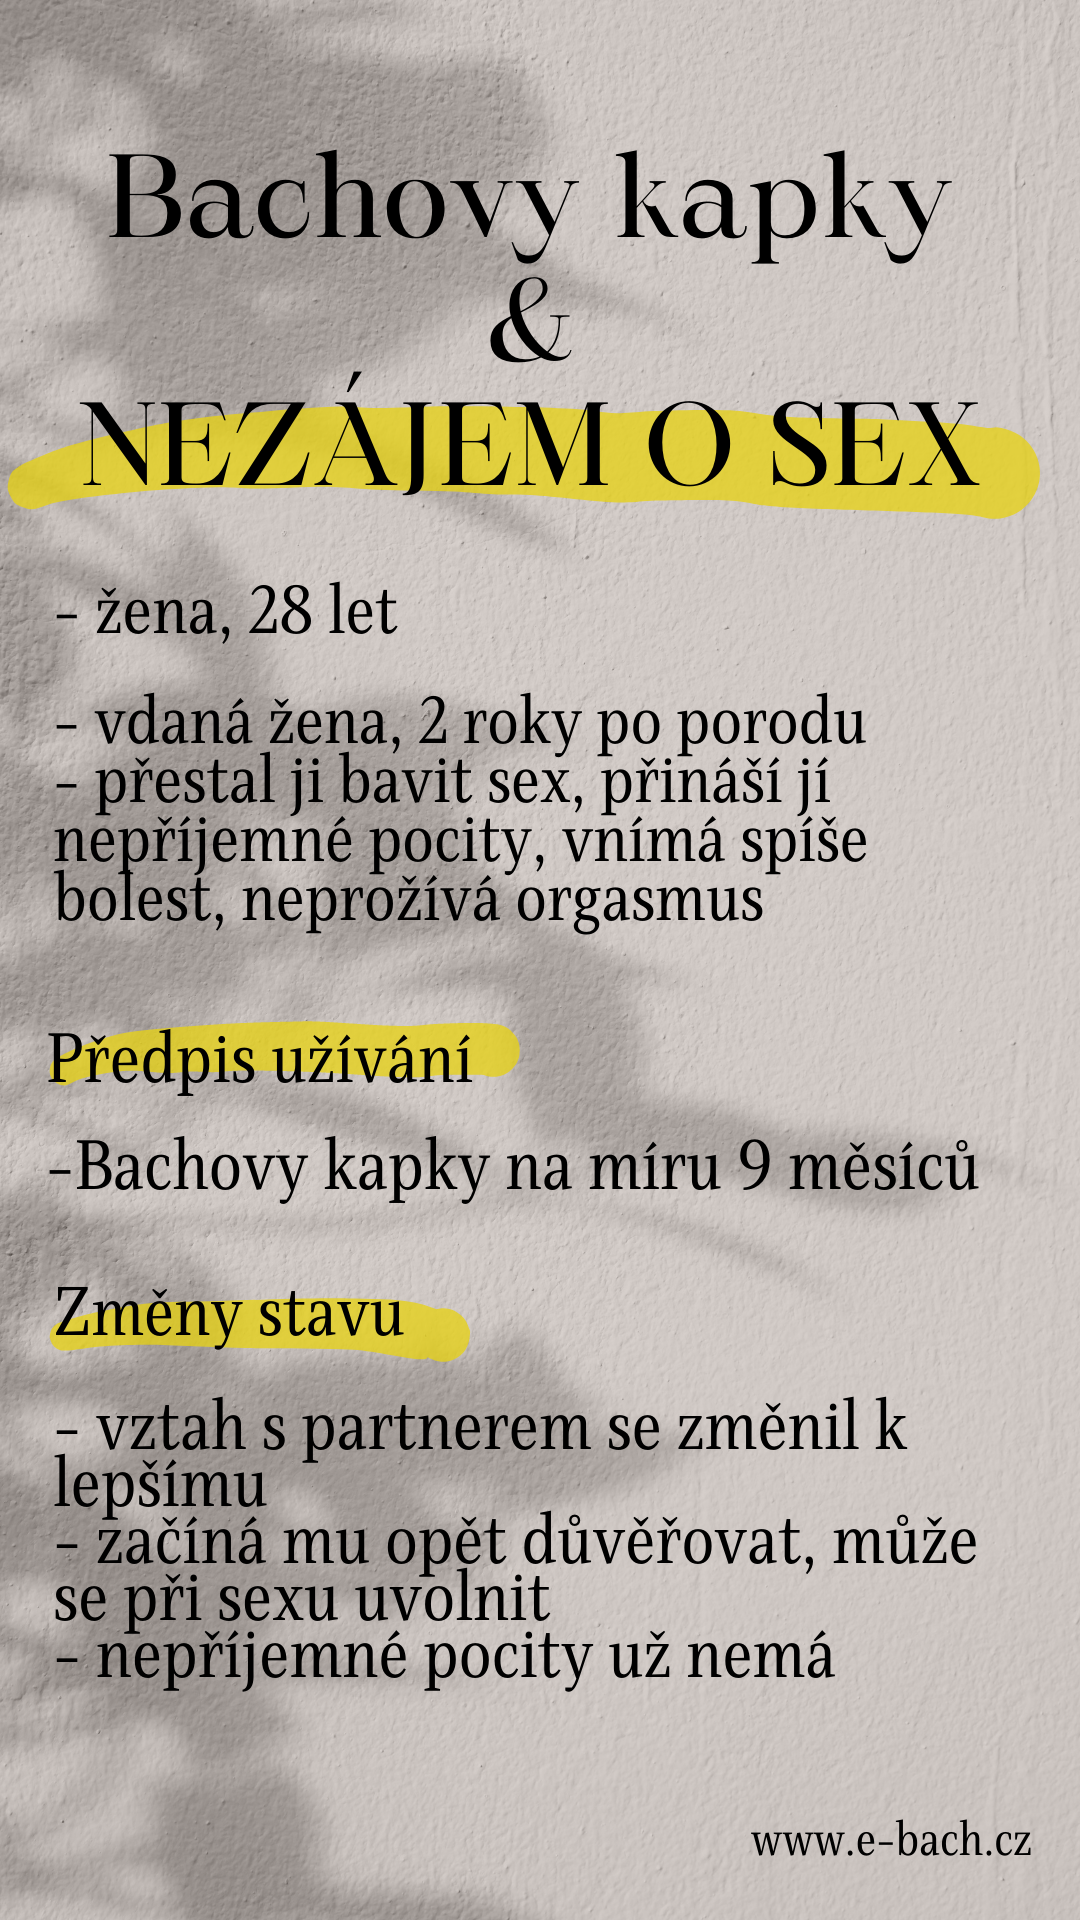 20 nezajem o sex